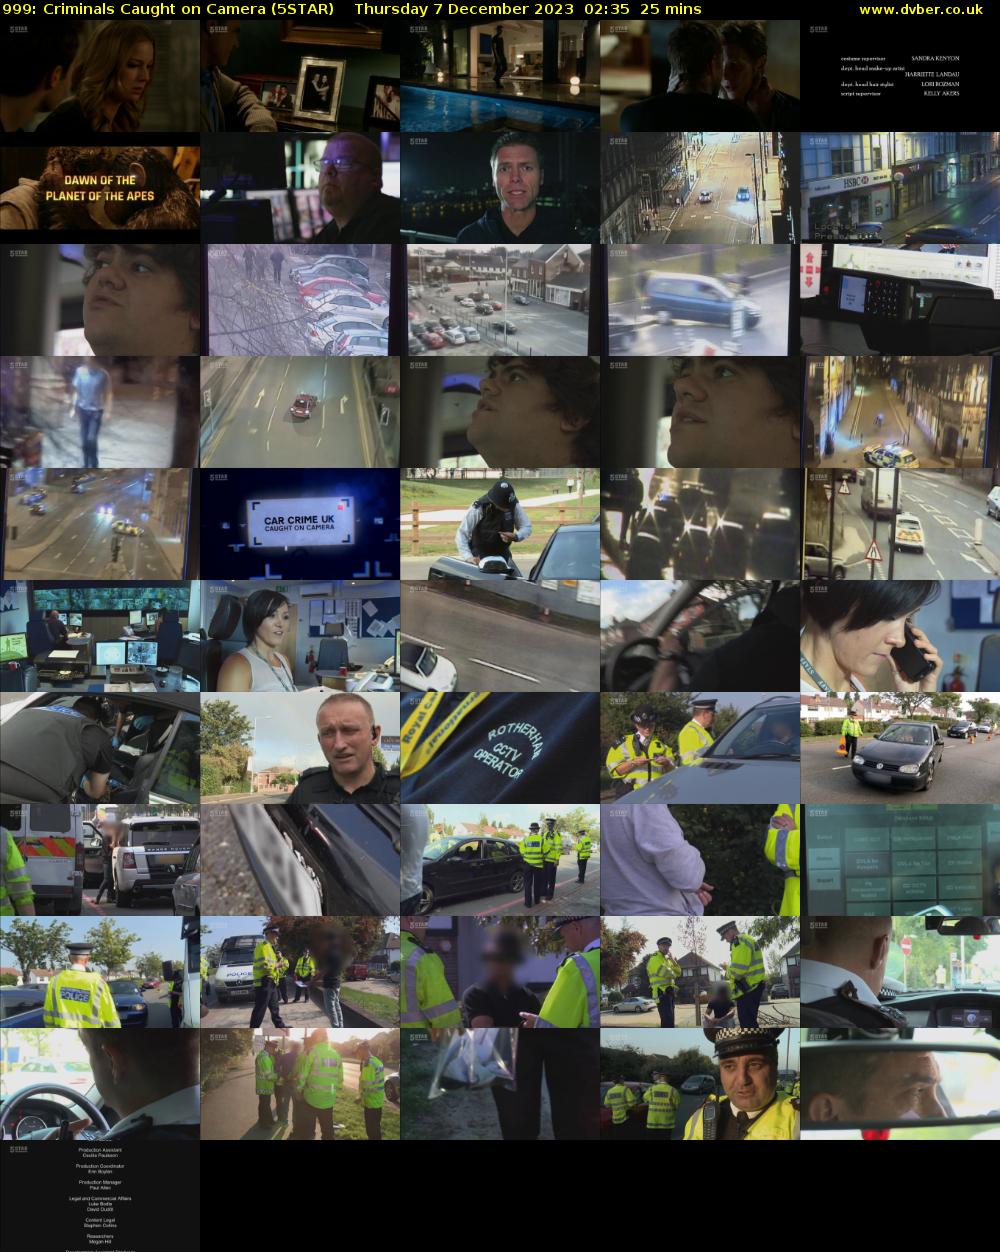 999: Criminals Caught on Camera (5STAR) Thursday 7 December 2023 02:35 - 03:00